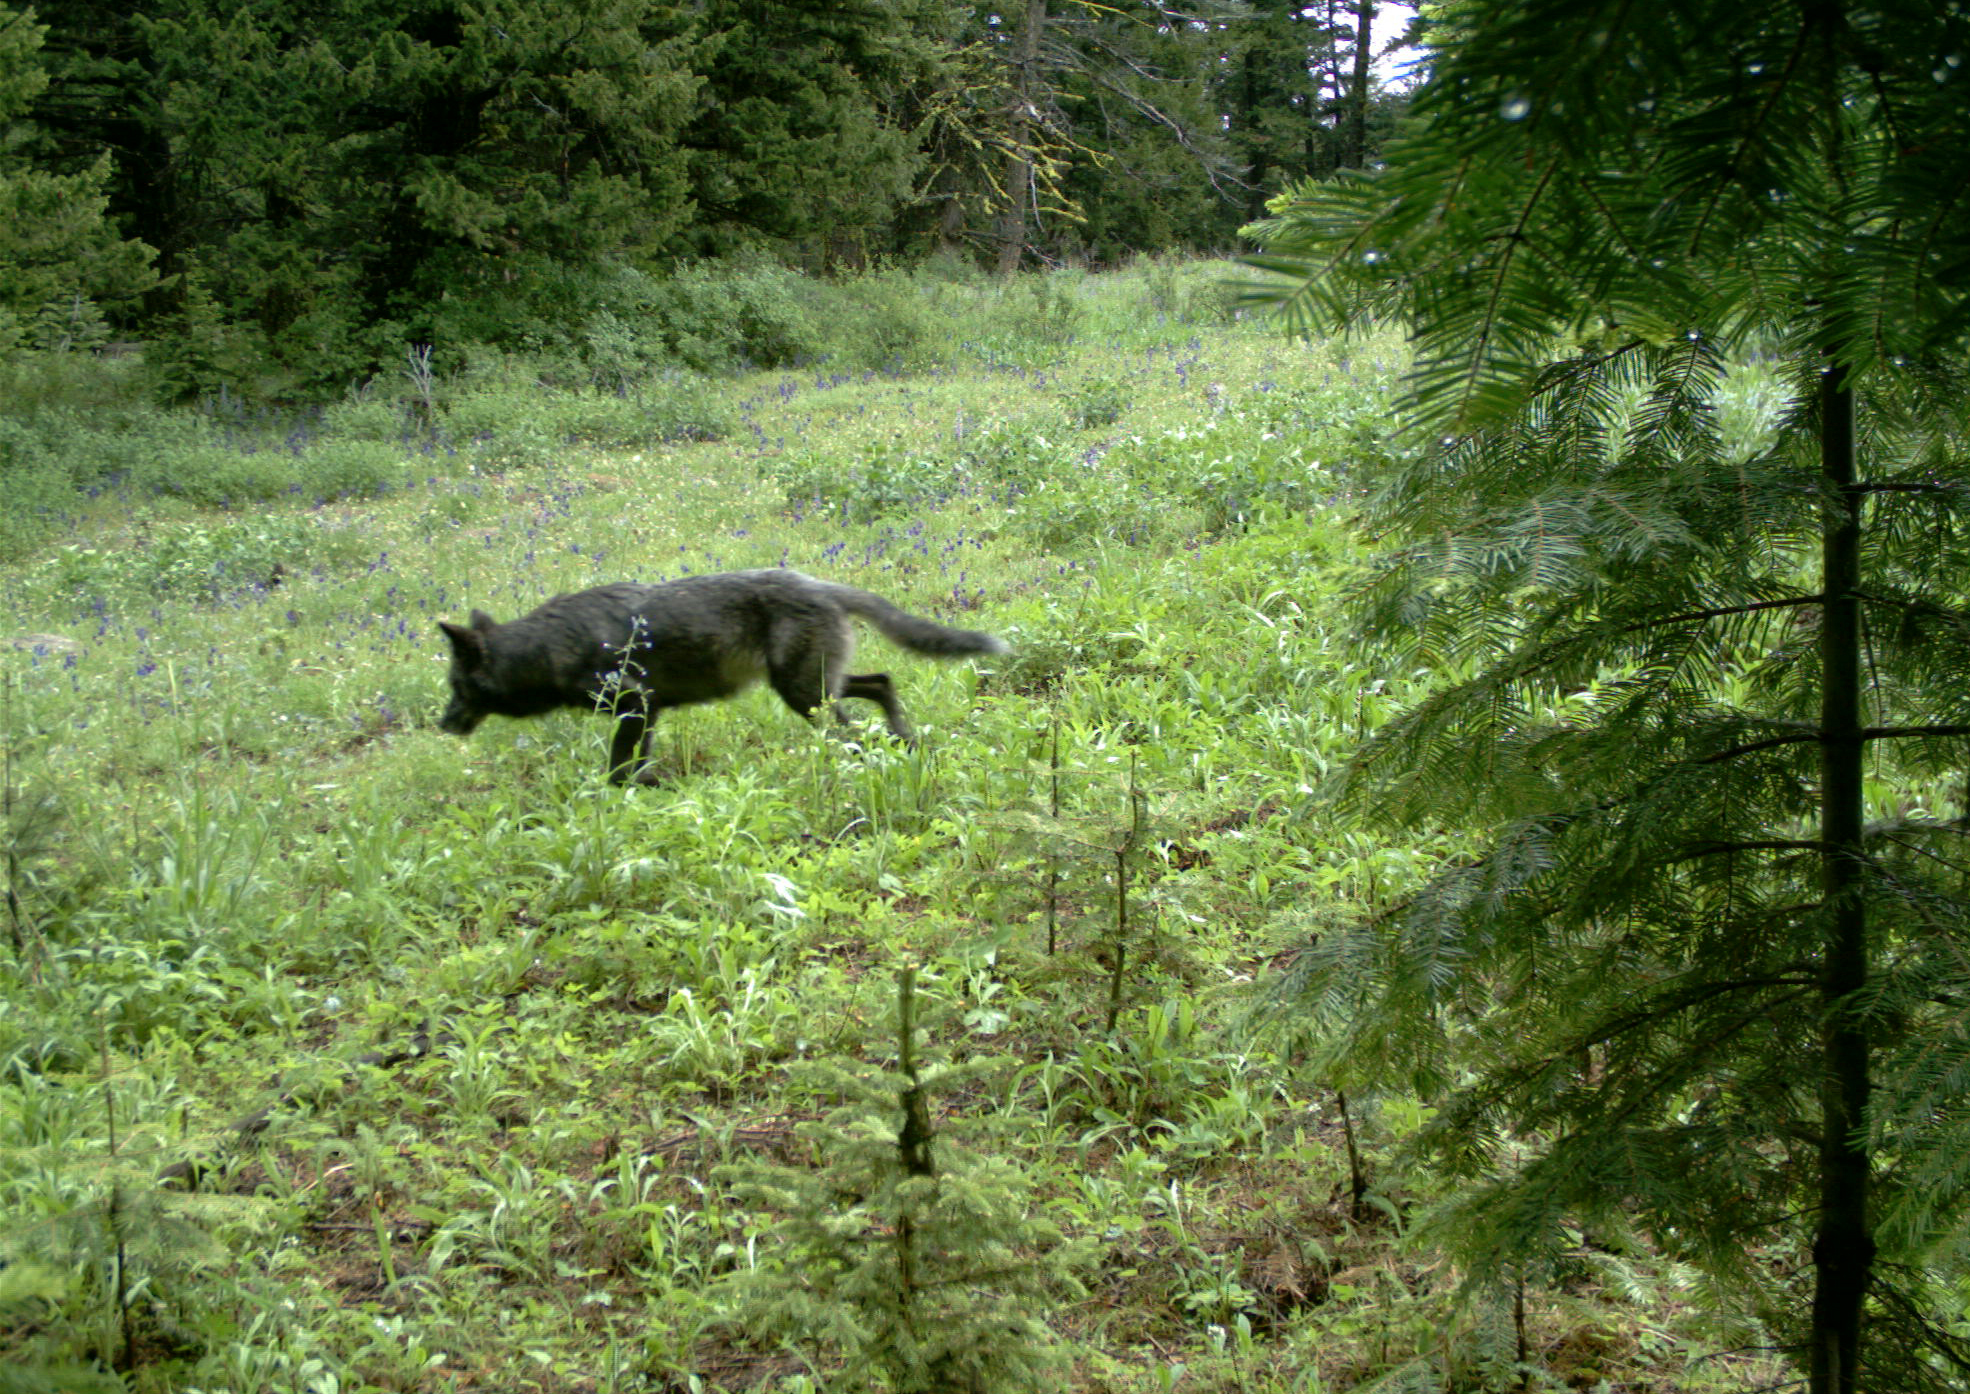 追踪摄像机捕捉到一只俄勒冈州狼。